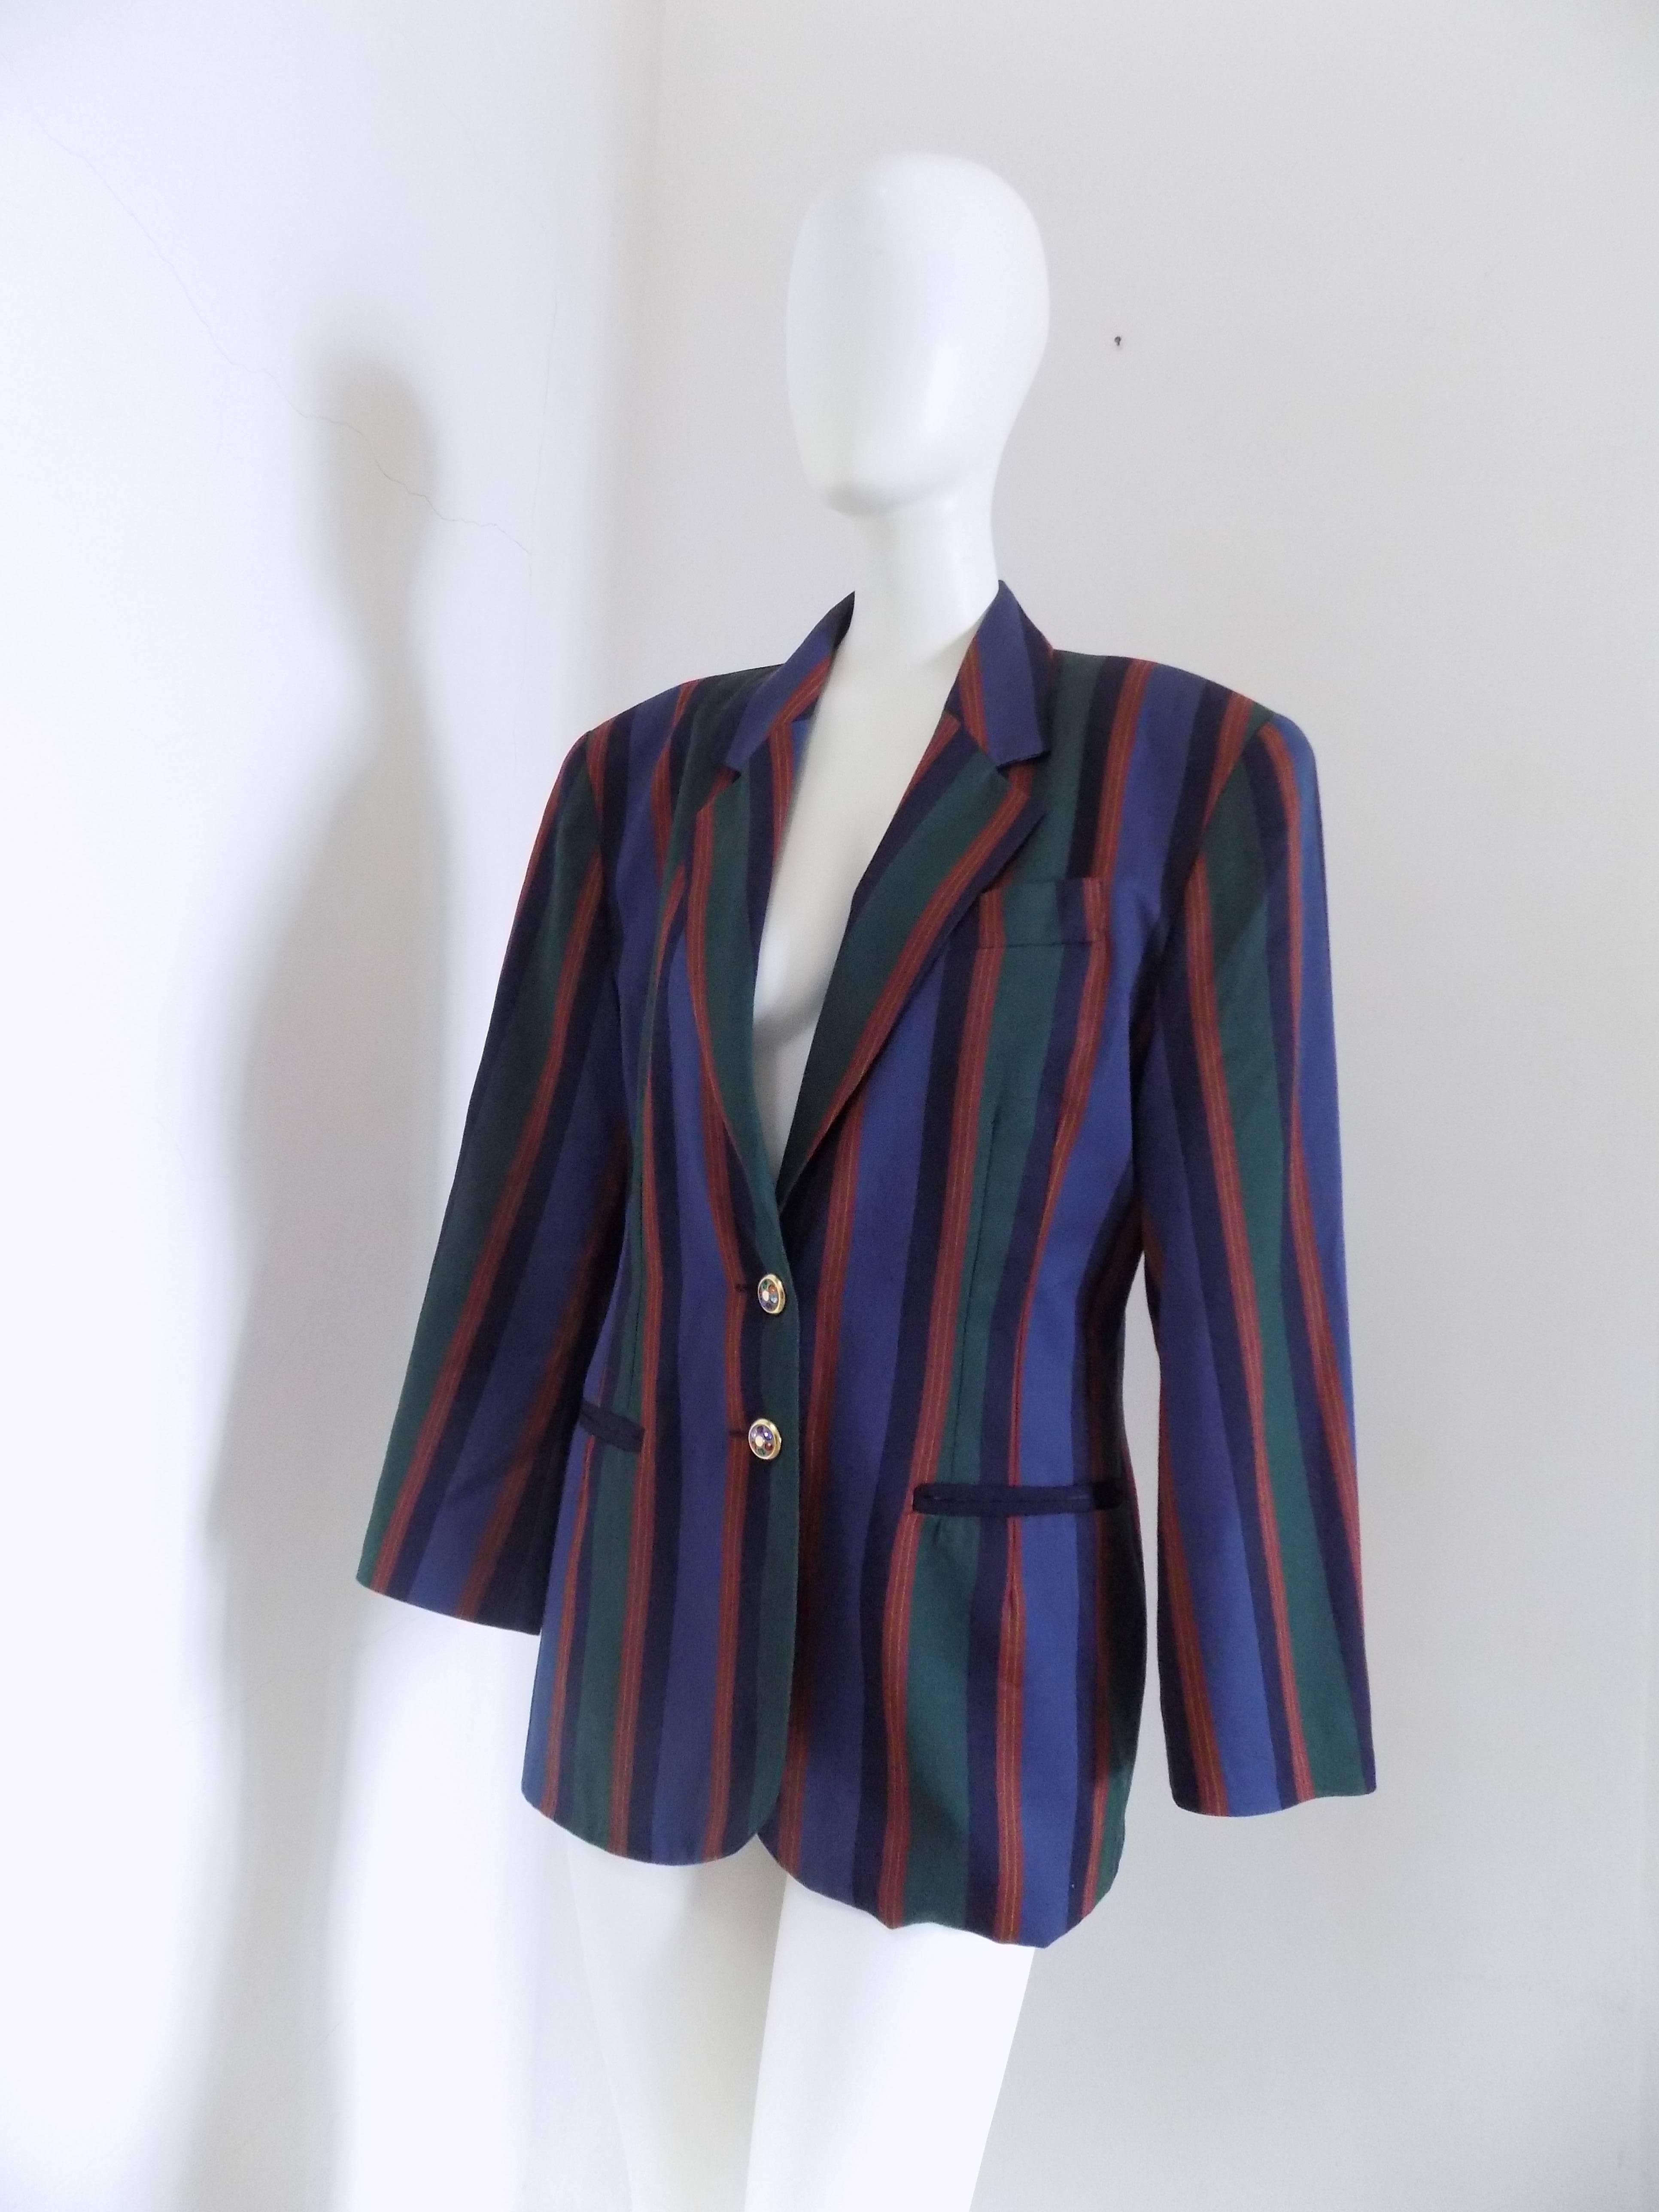 veste multicolore Debeaux des années 1970 
Bottillon embelli
Totalement fabriqué en Italie dans une gamme de taille 44